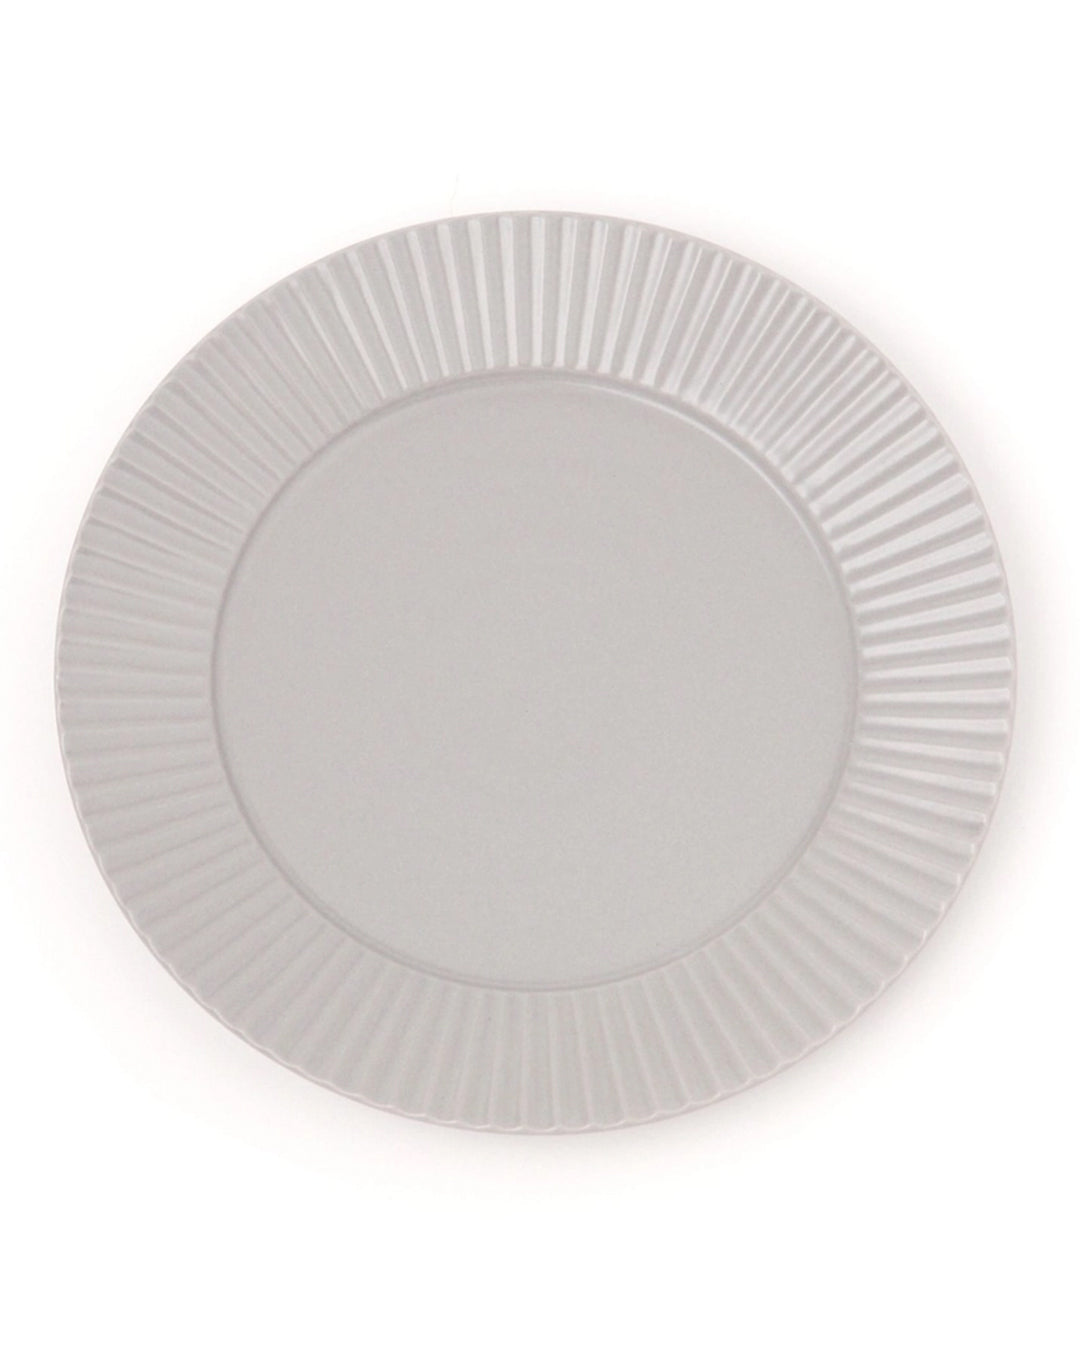 Lakole Mino Ware Large Serving Plate - Grey